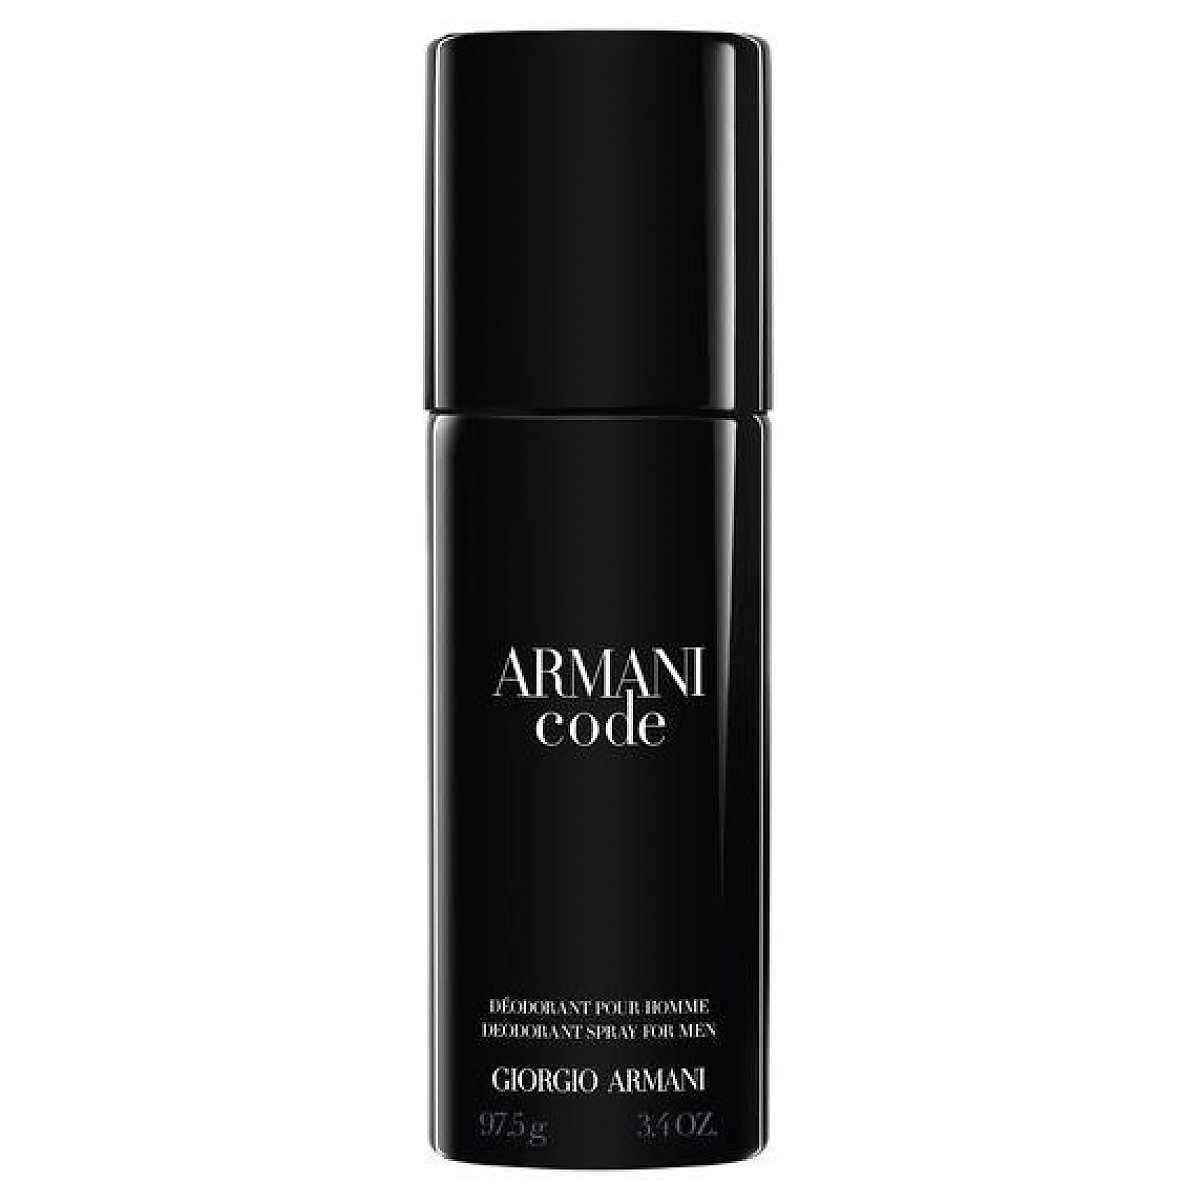 Giorgio Armani Code pour Homme Dezodorant spray 150ml - Perfumeria Dolce.pl